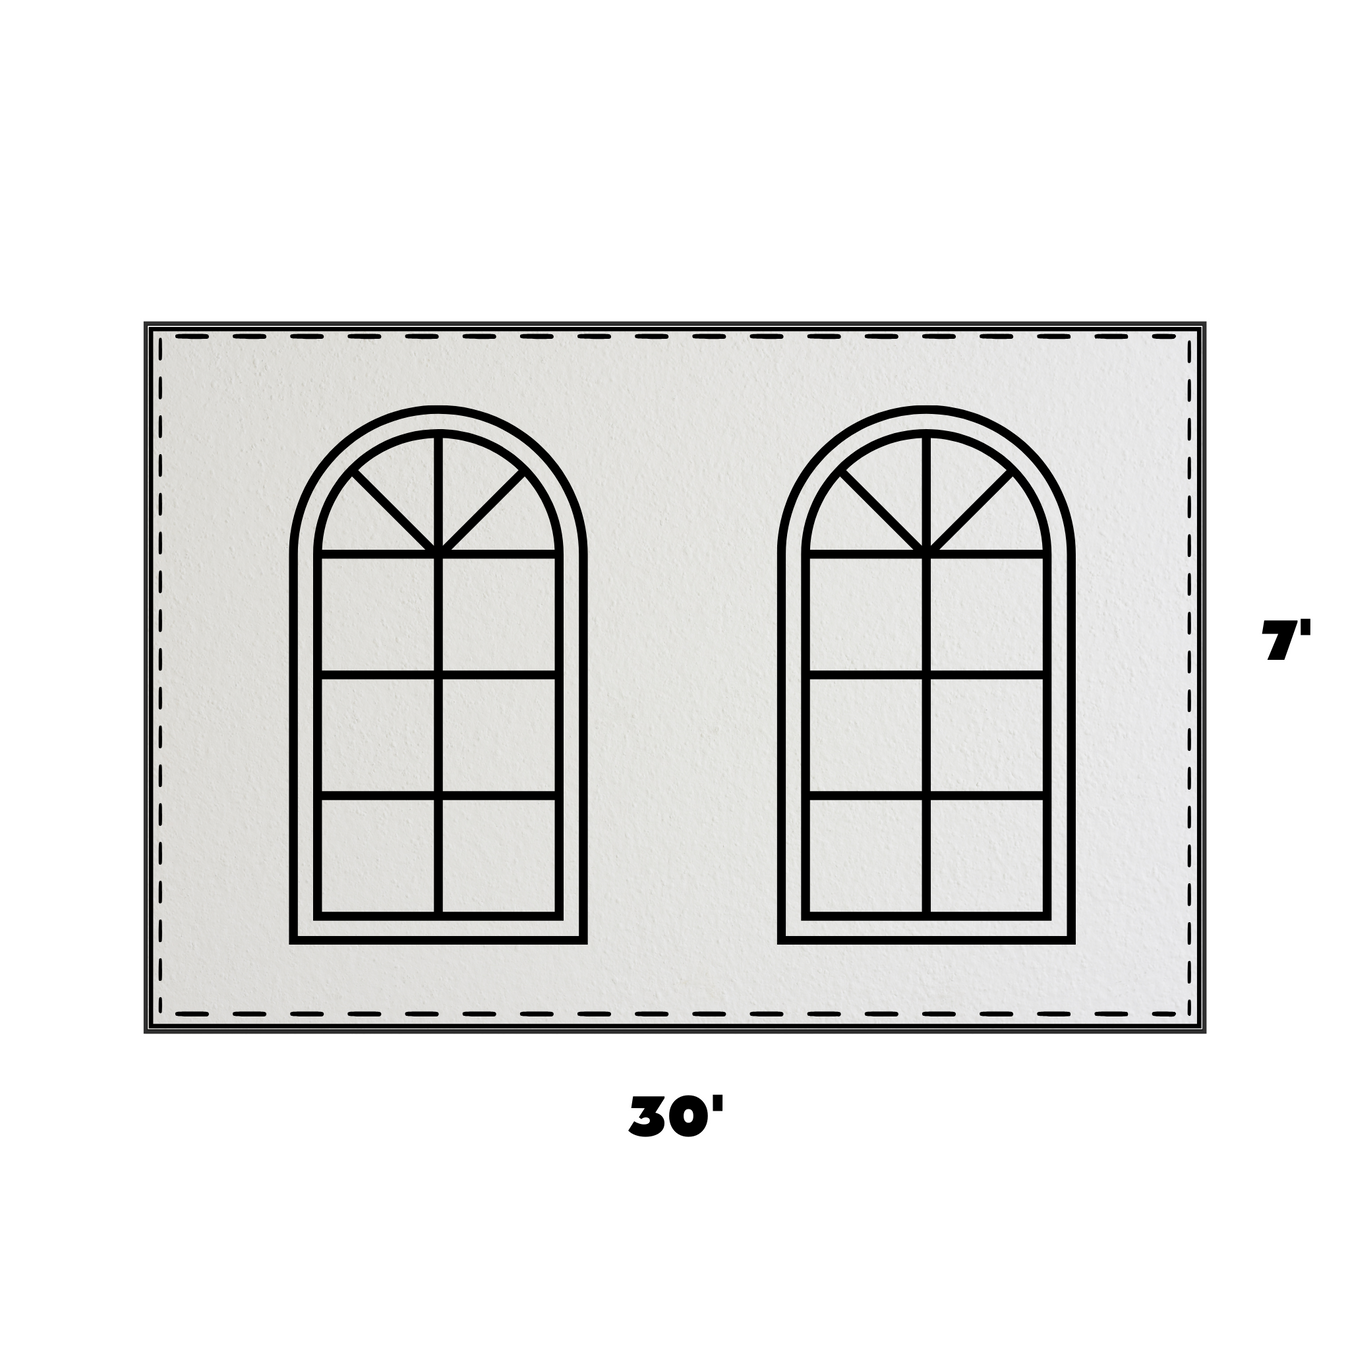 7 x 30 Cathedral Window Sidewall